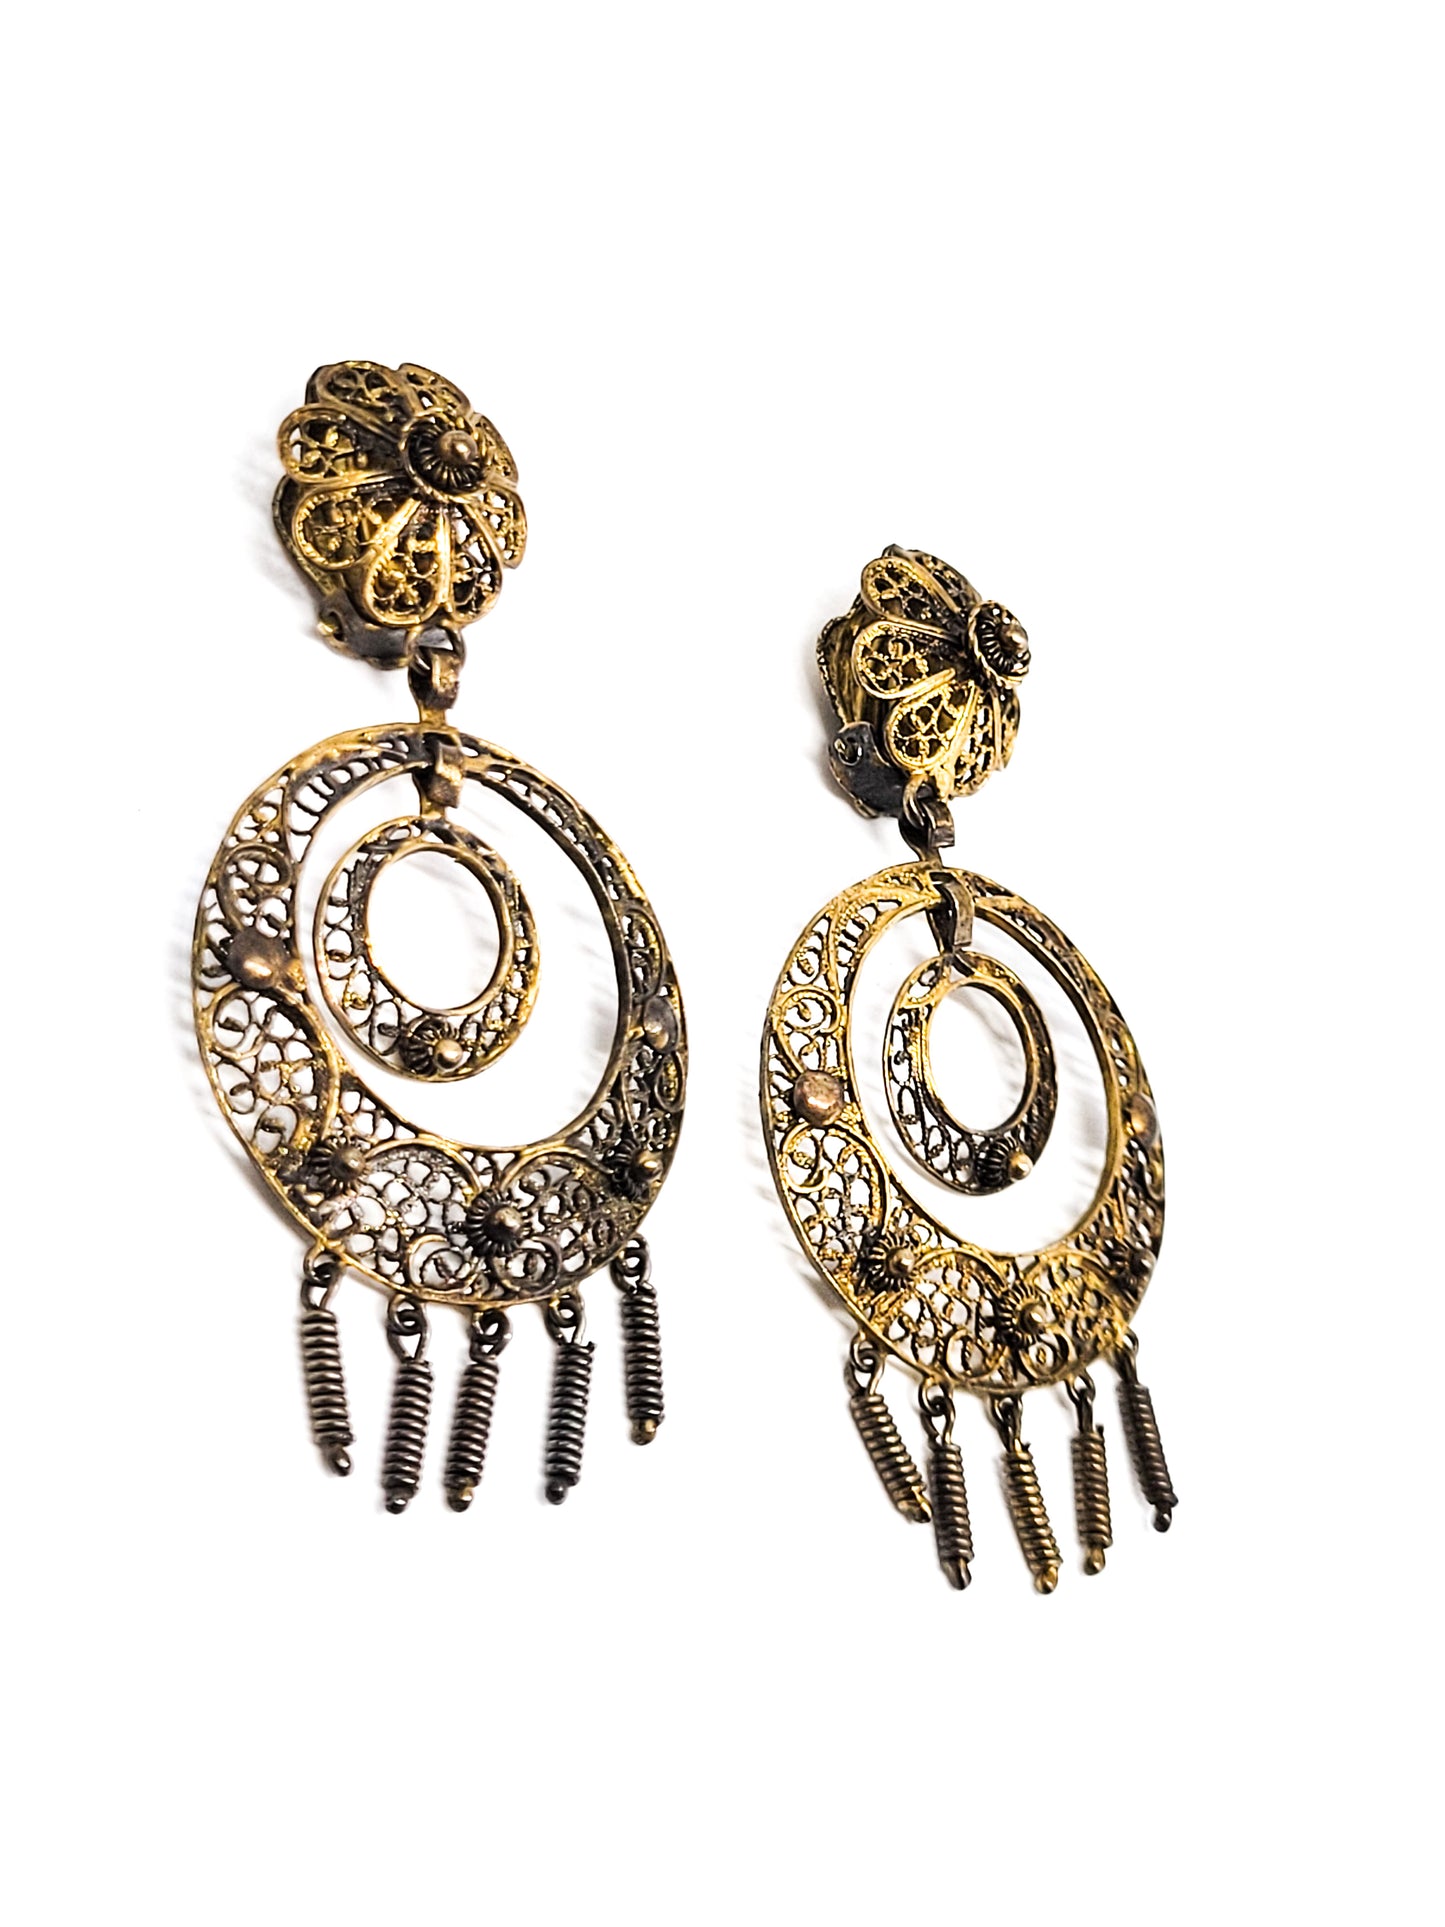 Zeeuwse Knoop Long antique gold over Sterling Silver Spun Filigree Dangle Earrings